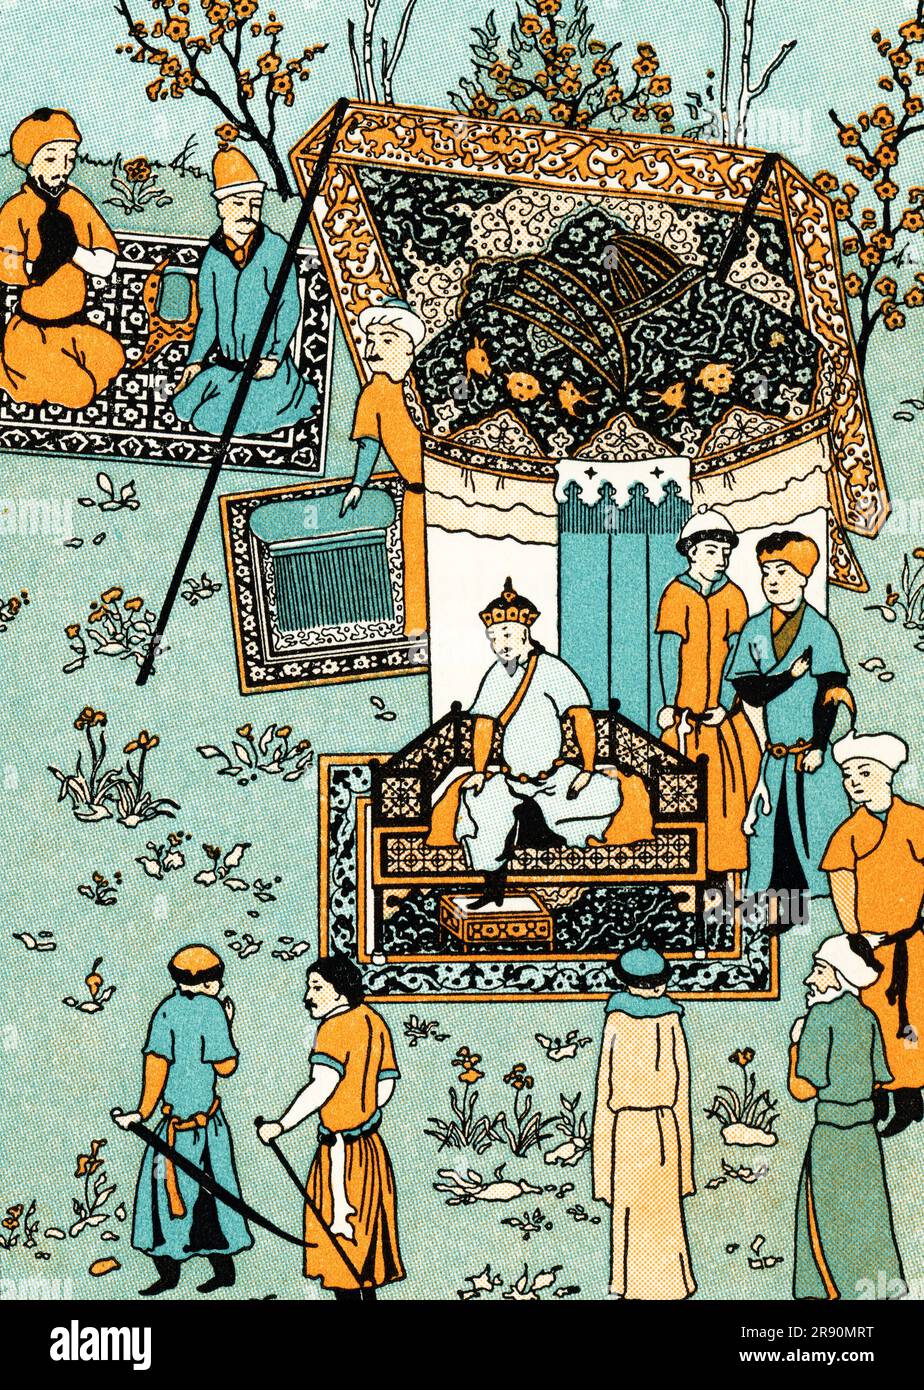 Timur gewährt anlässlich seines Beitritts eine Audienz. Nach einer Illustration von Garrett Zafarnama, 1467. Timur (1336-1405) war ein türkisch-mongolischer Eroberer, der das Timurid-Reich in und um das moderne Afghanistan, den Iran und Zentralasien gründete und der erste Herrscher der Timurid-Dynastie wurde. Stockfoto